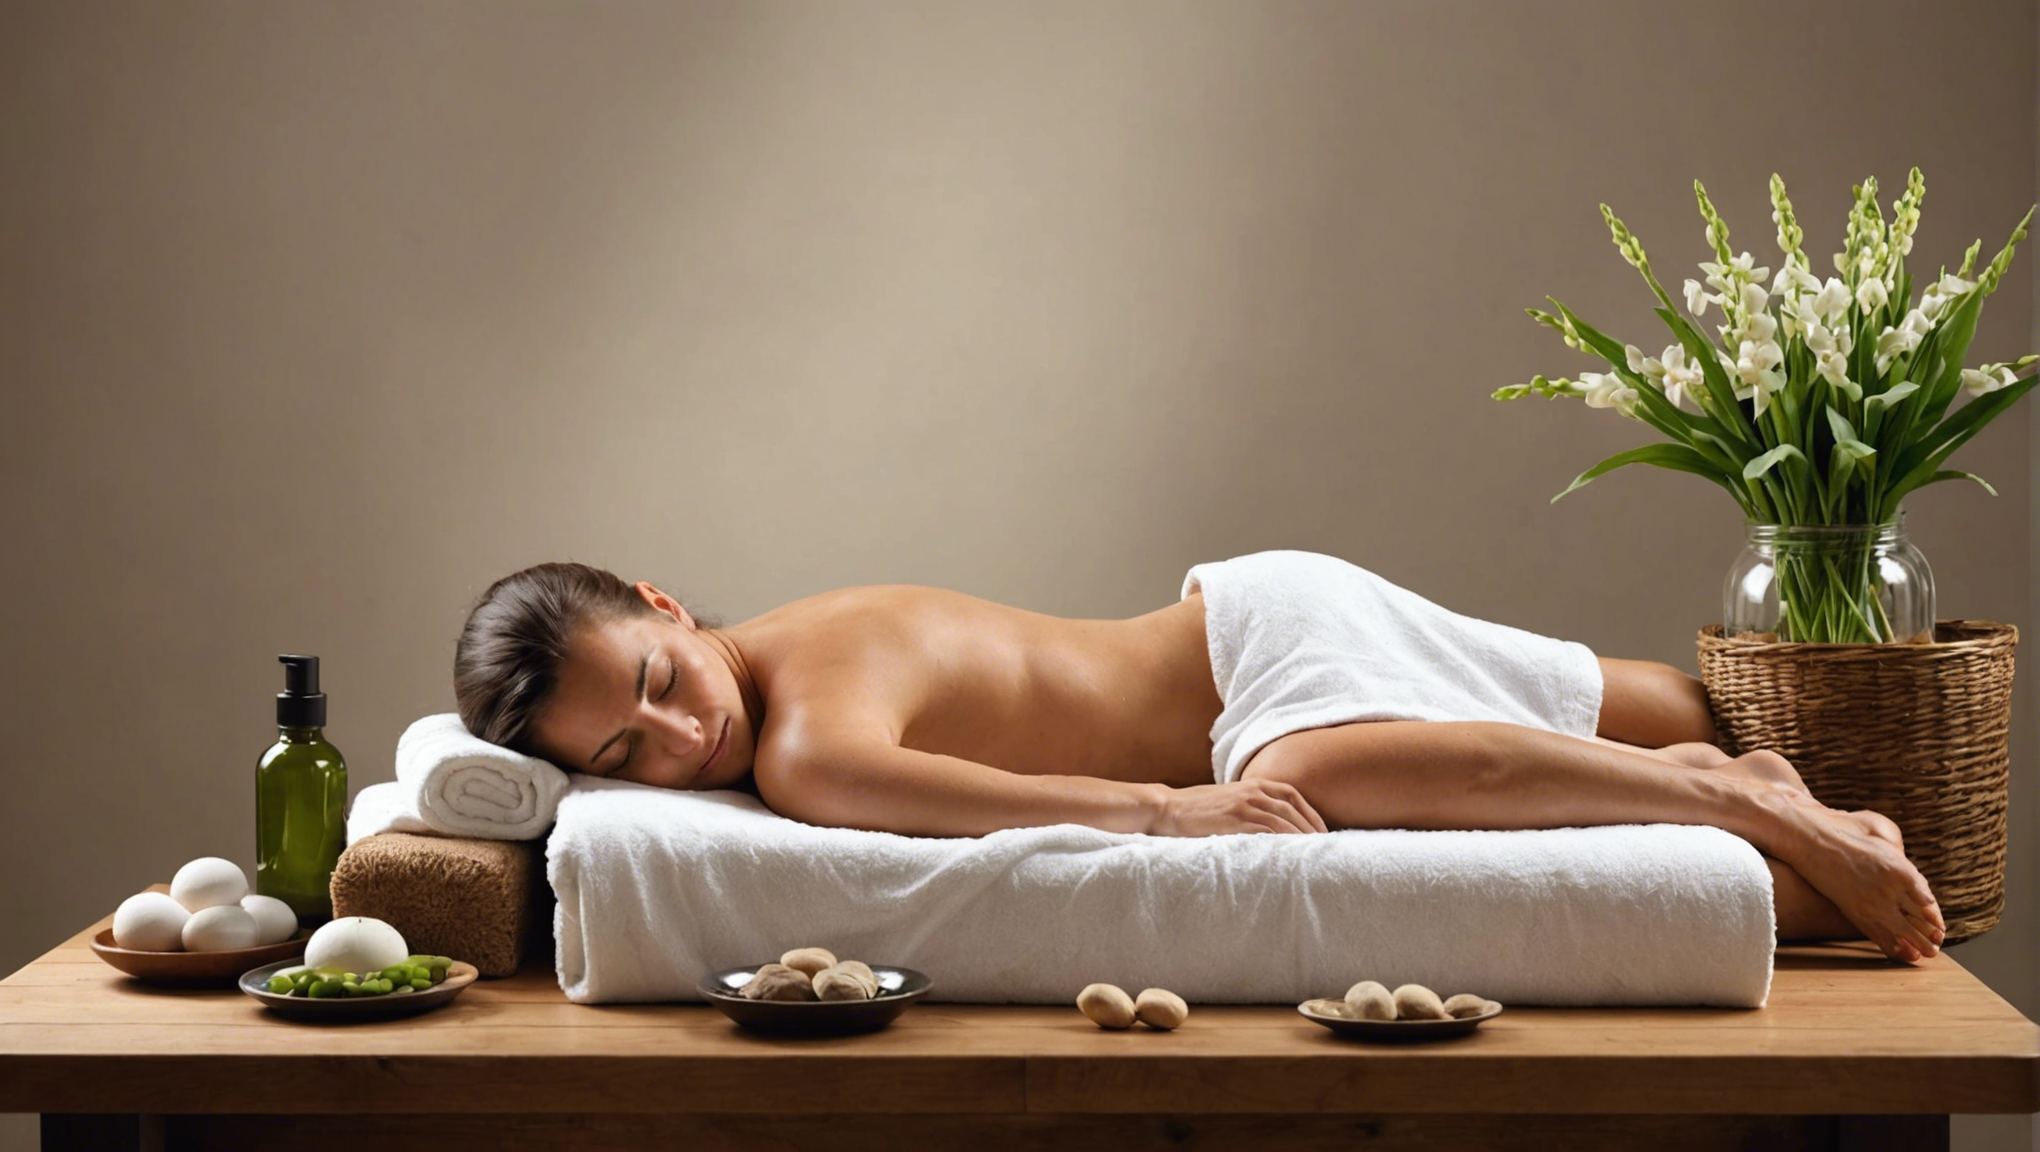 découvrez les tarifs des massages chez yves rocher et offrez-vous un moment de détente et de bien-être dans un cadre apaisant et professionnel.